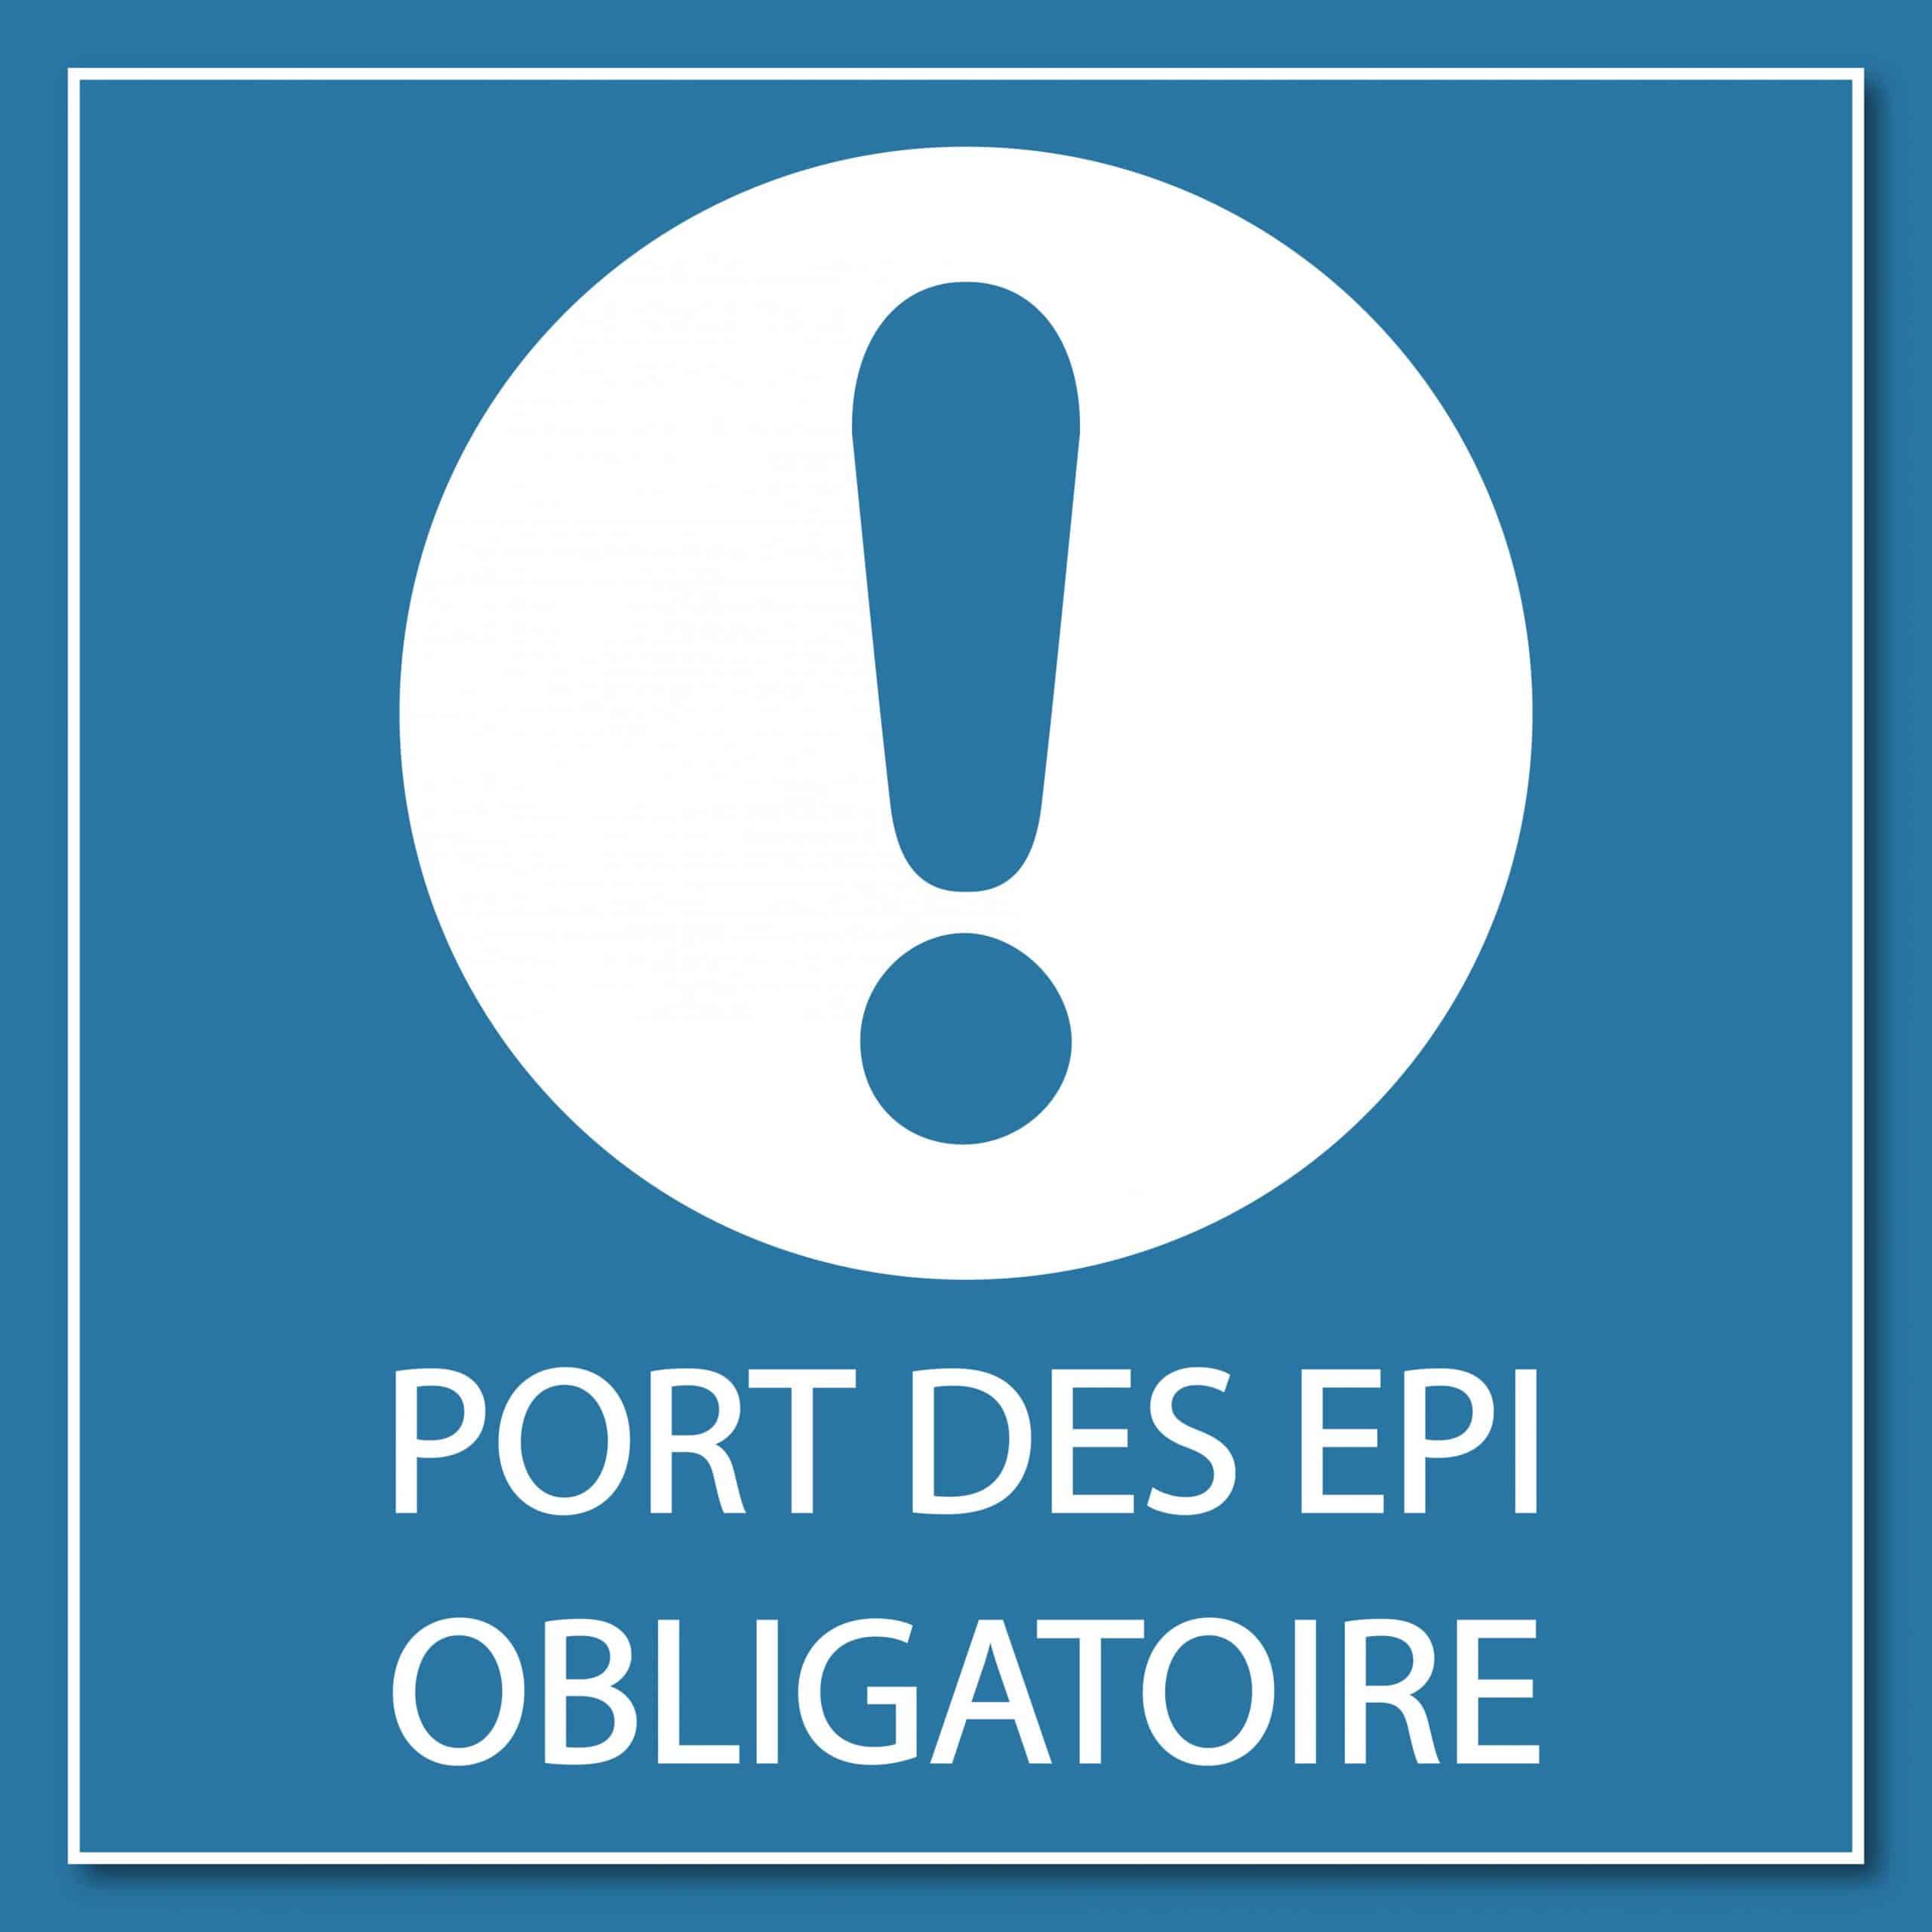 Une affiche indiquant "Port des EPI obligatoire"